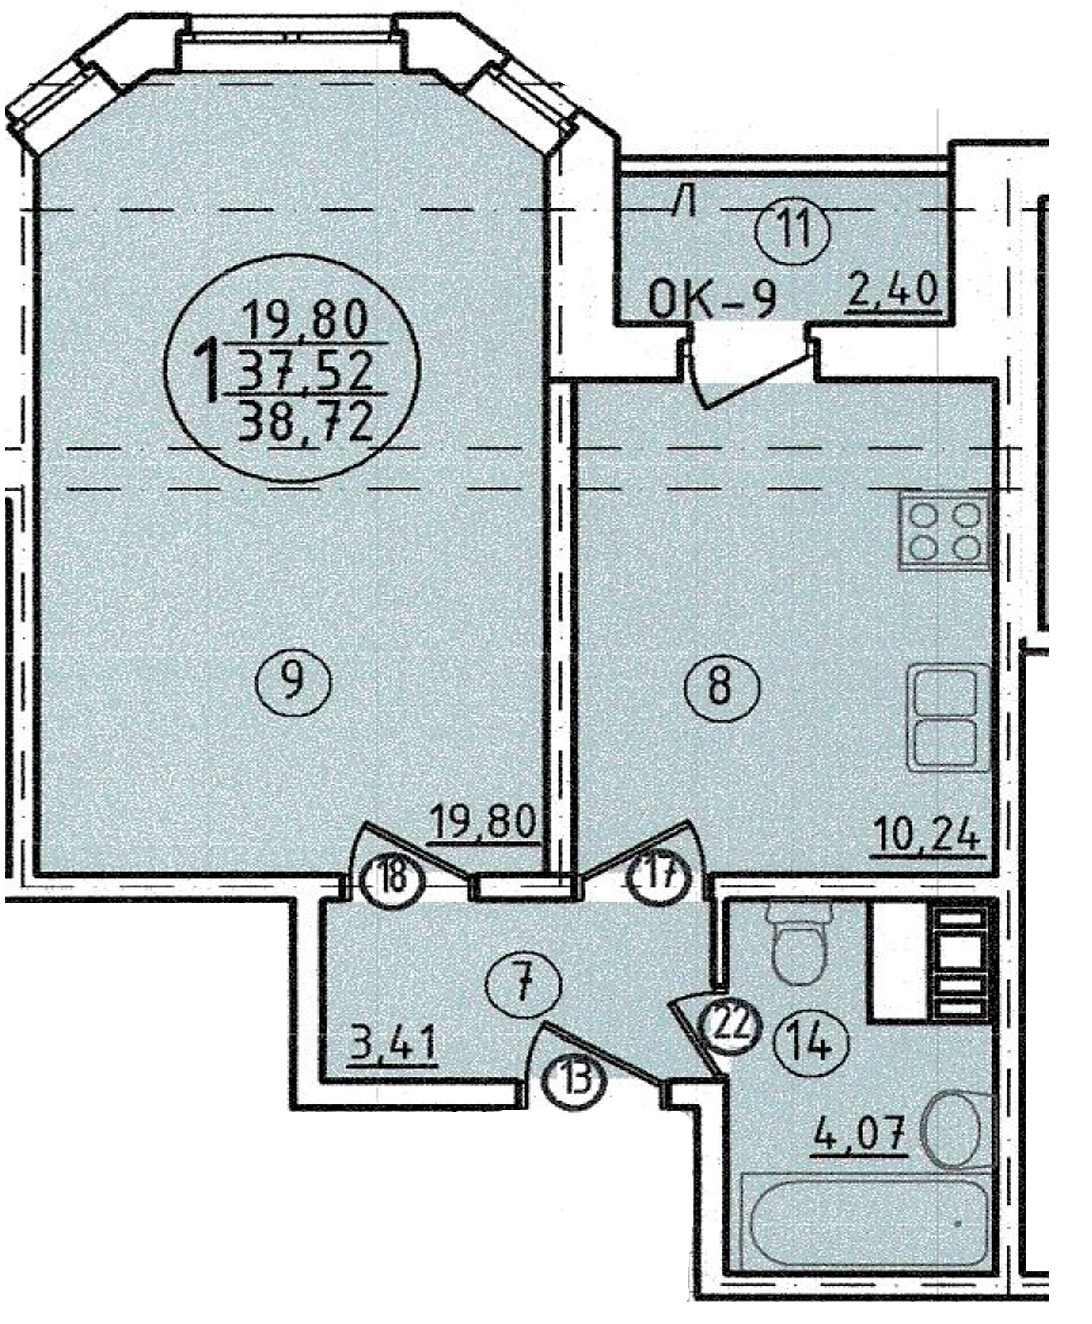 1-комнатная квартира 37,52 м²